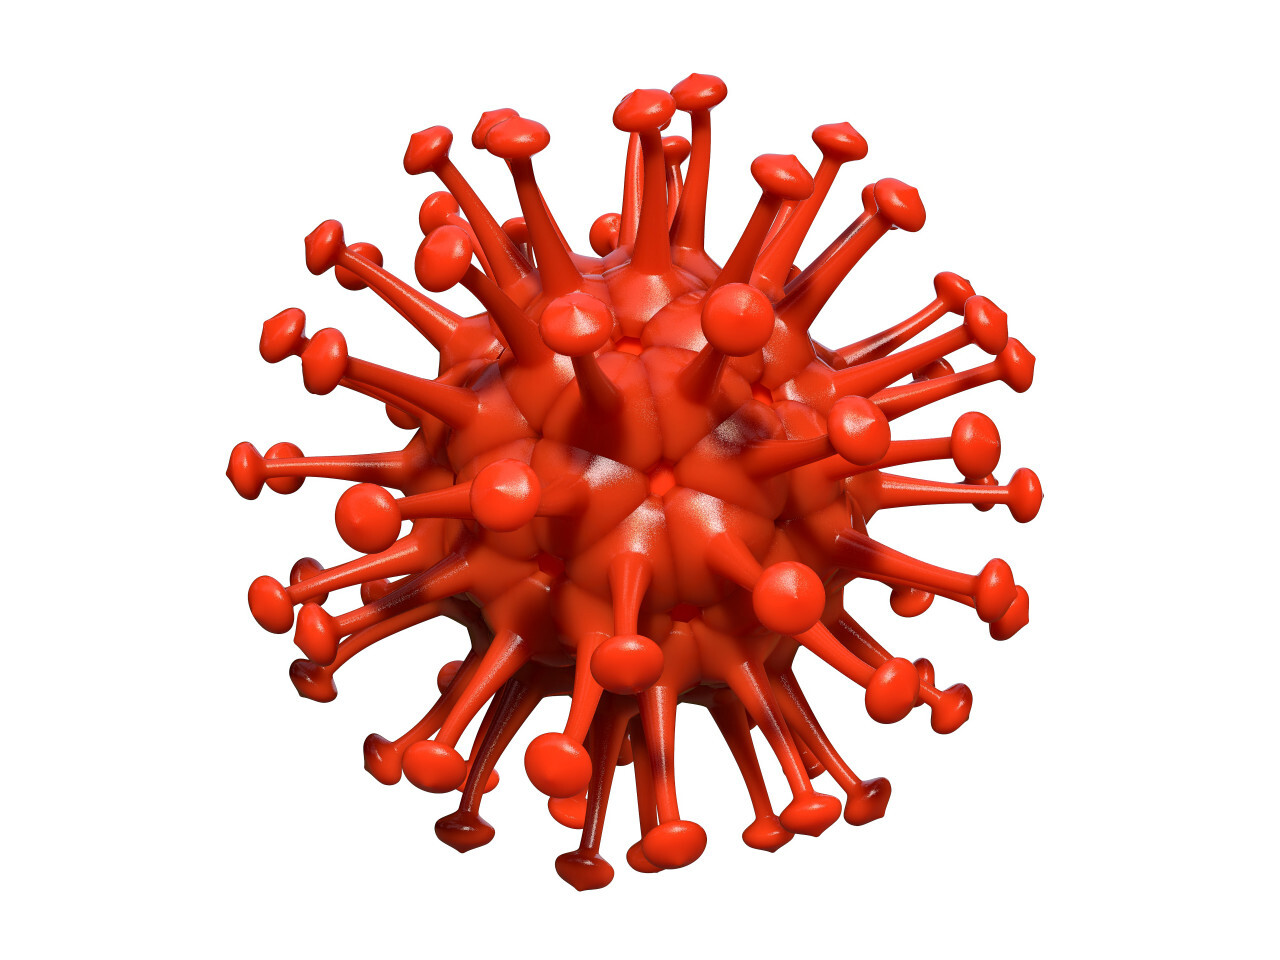 corona virus covid 19 isolated on white background